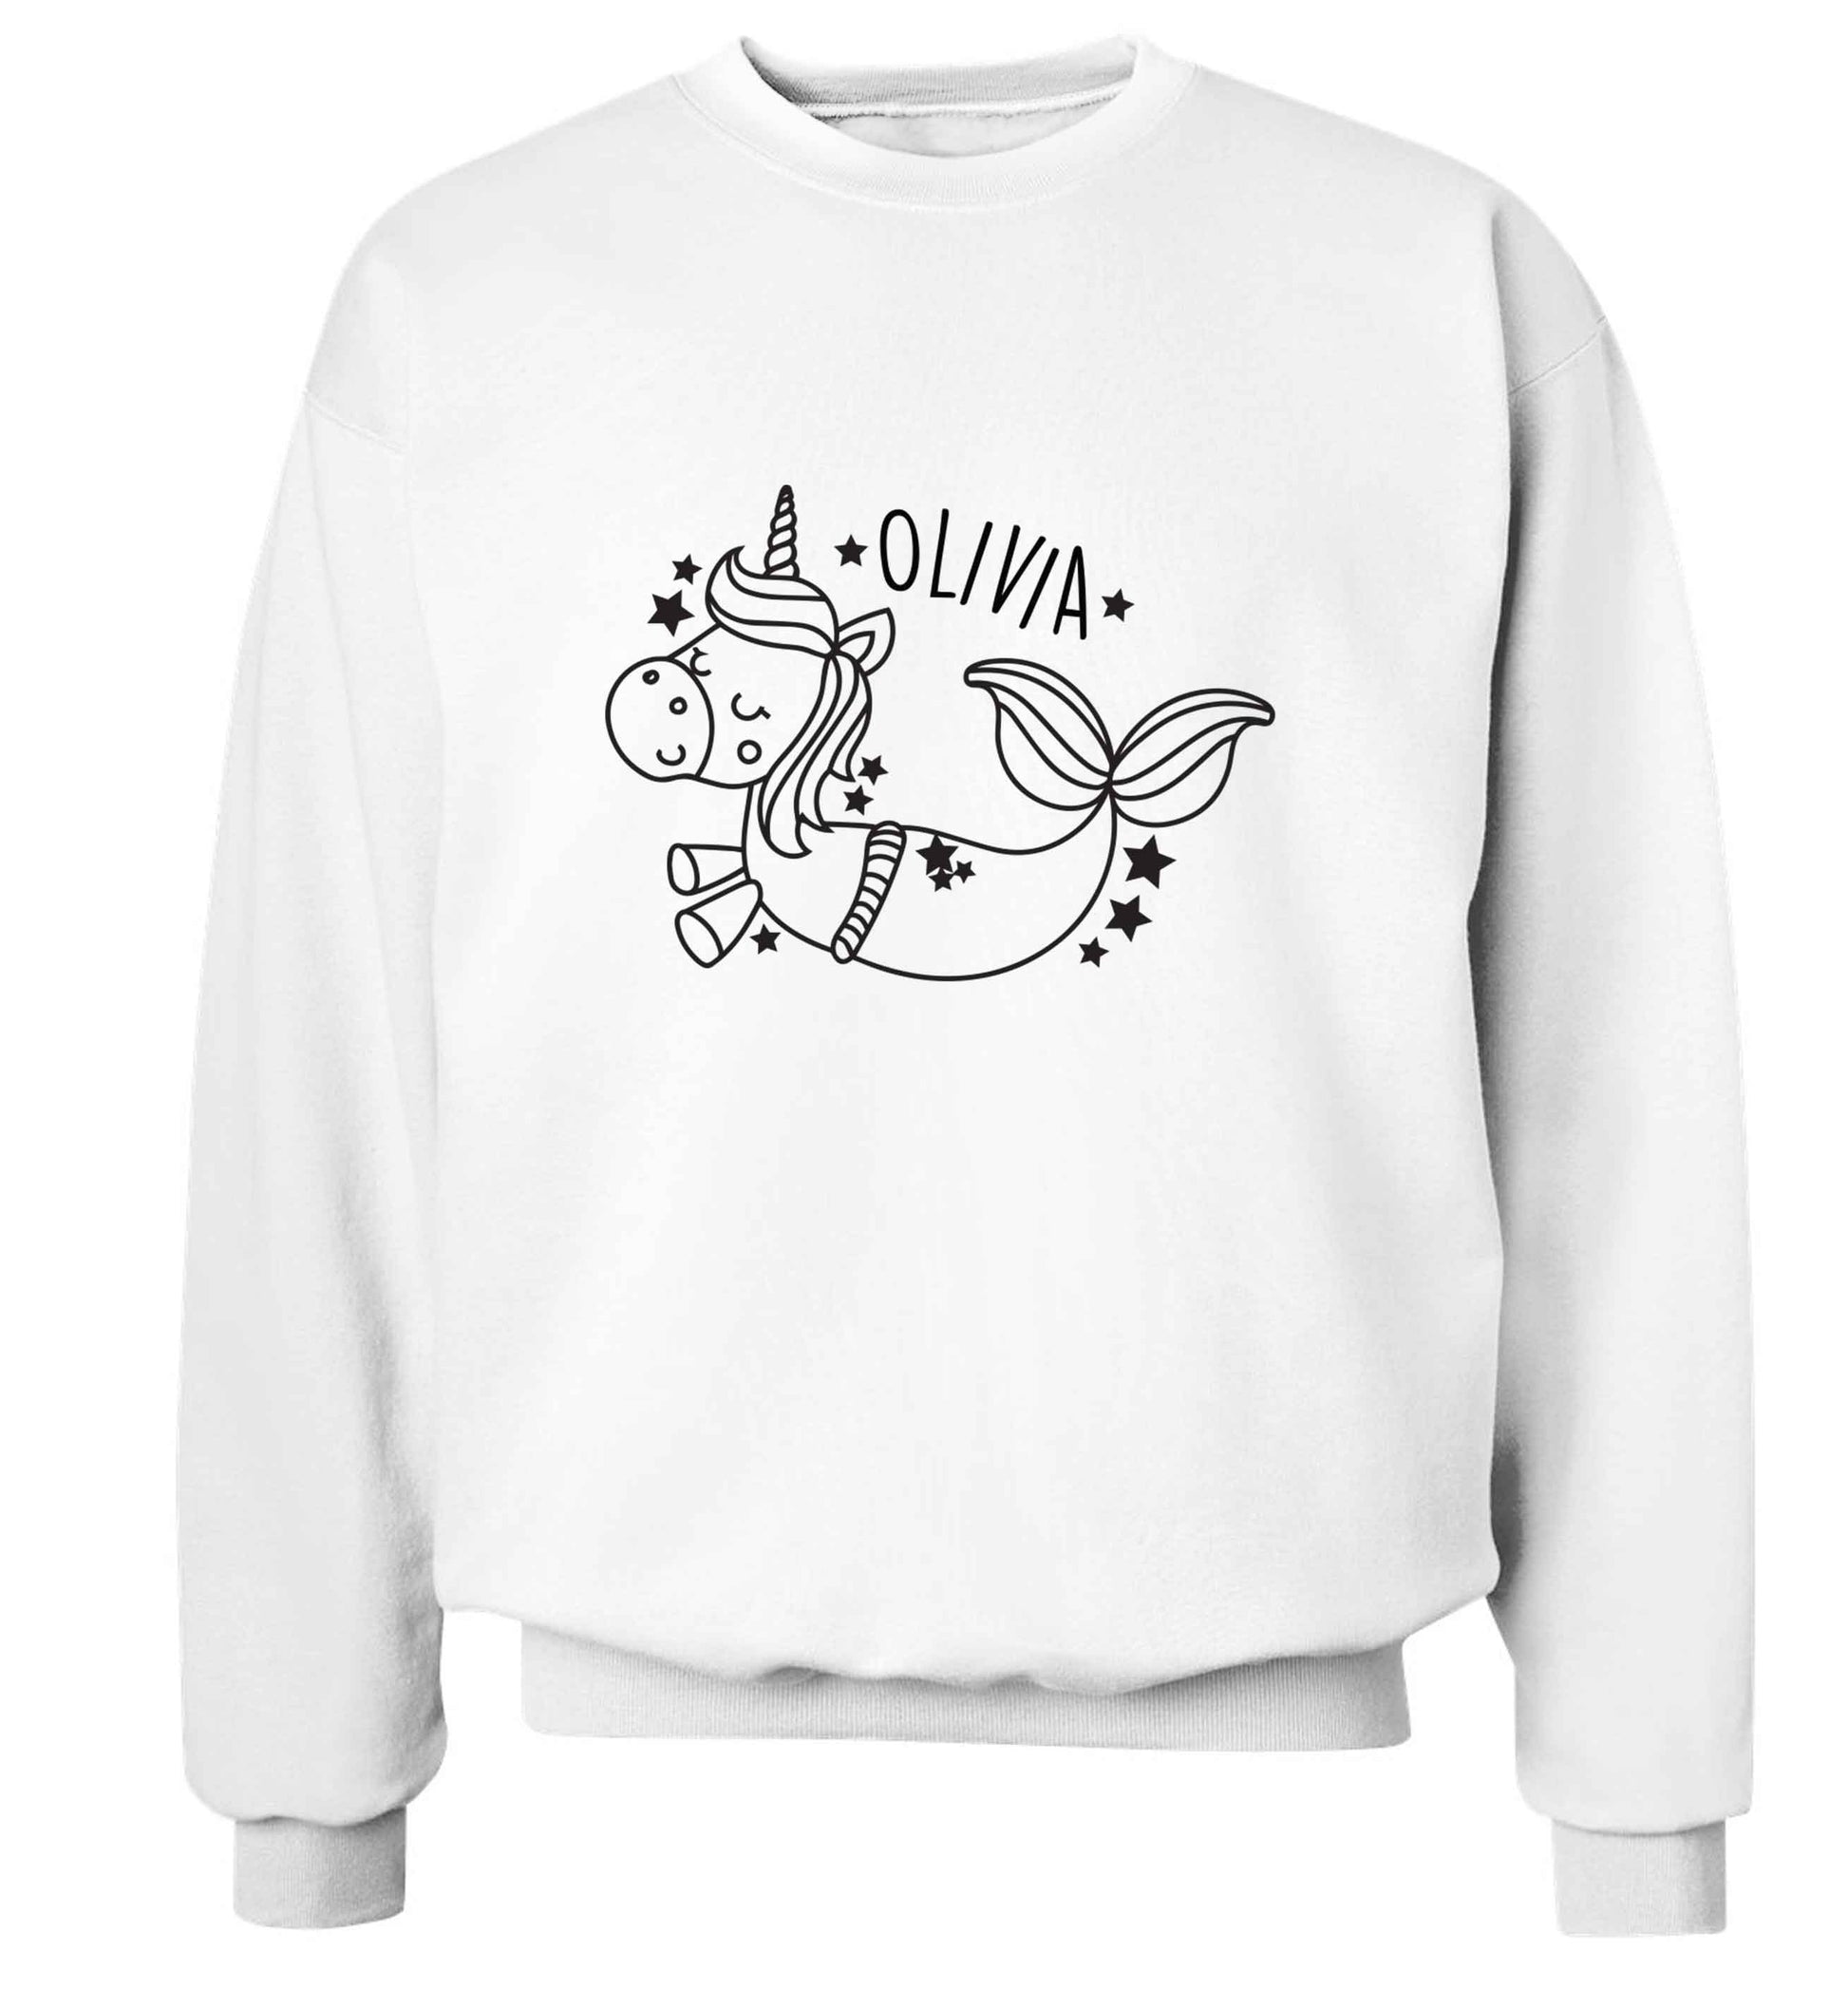 Unicorn mermaid - any name adult's unisex white sweater 2XL